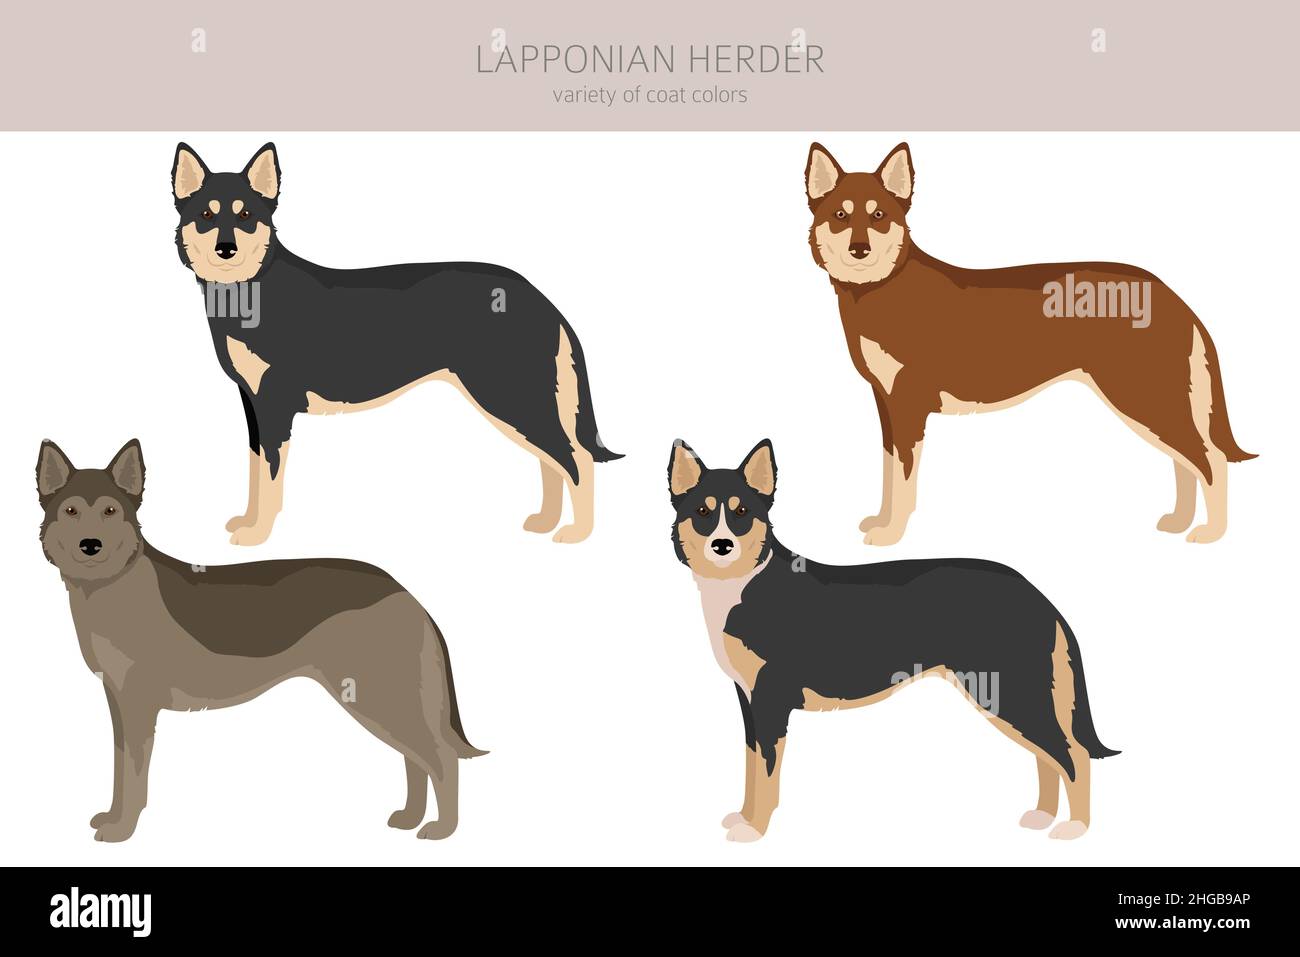 Lapponian Herder Clipart. Pose diverse, colori del cappotto impostati. Illustrazione vettoriale Illustrazione Vettoriale